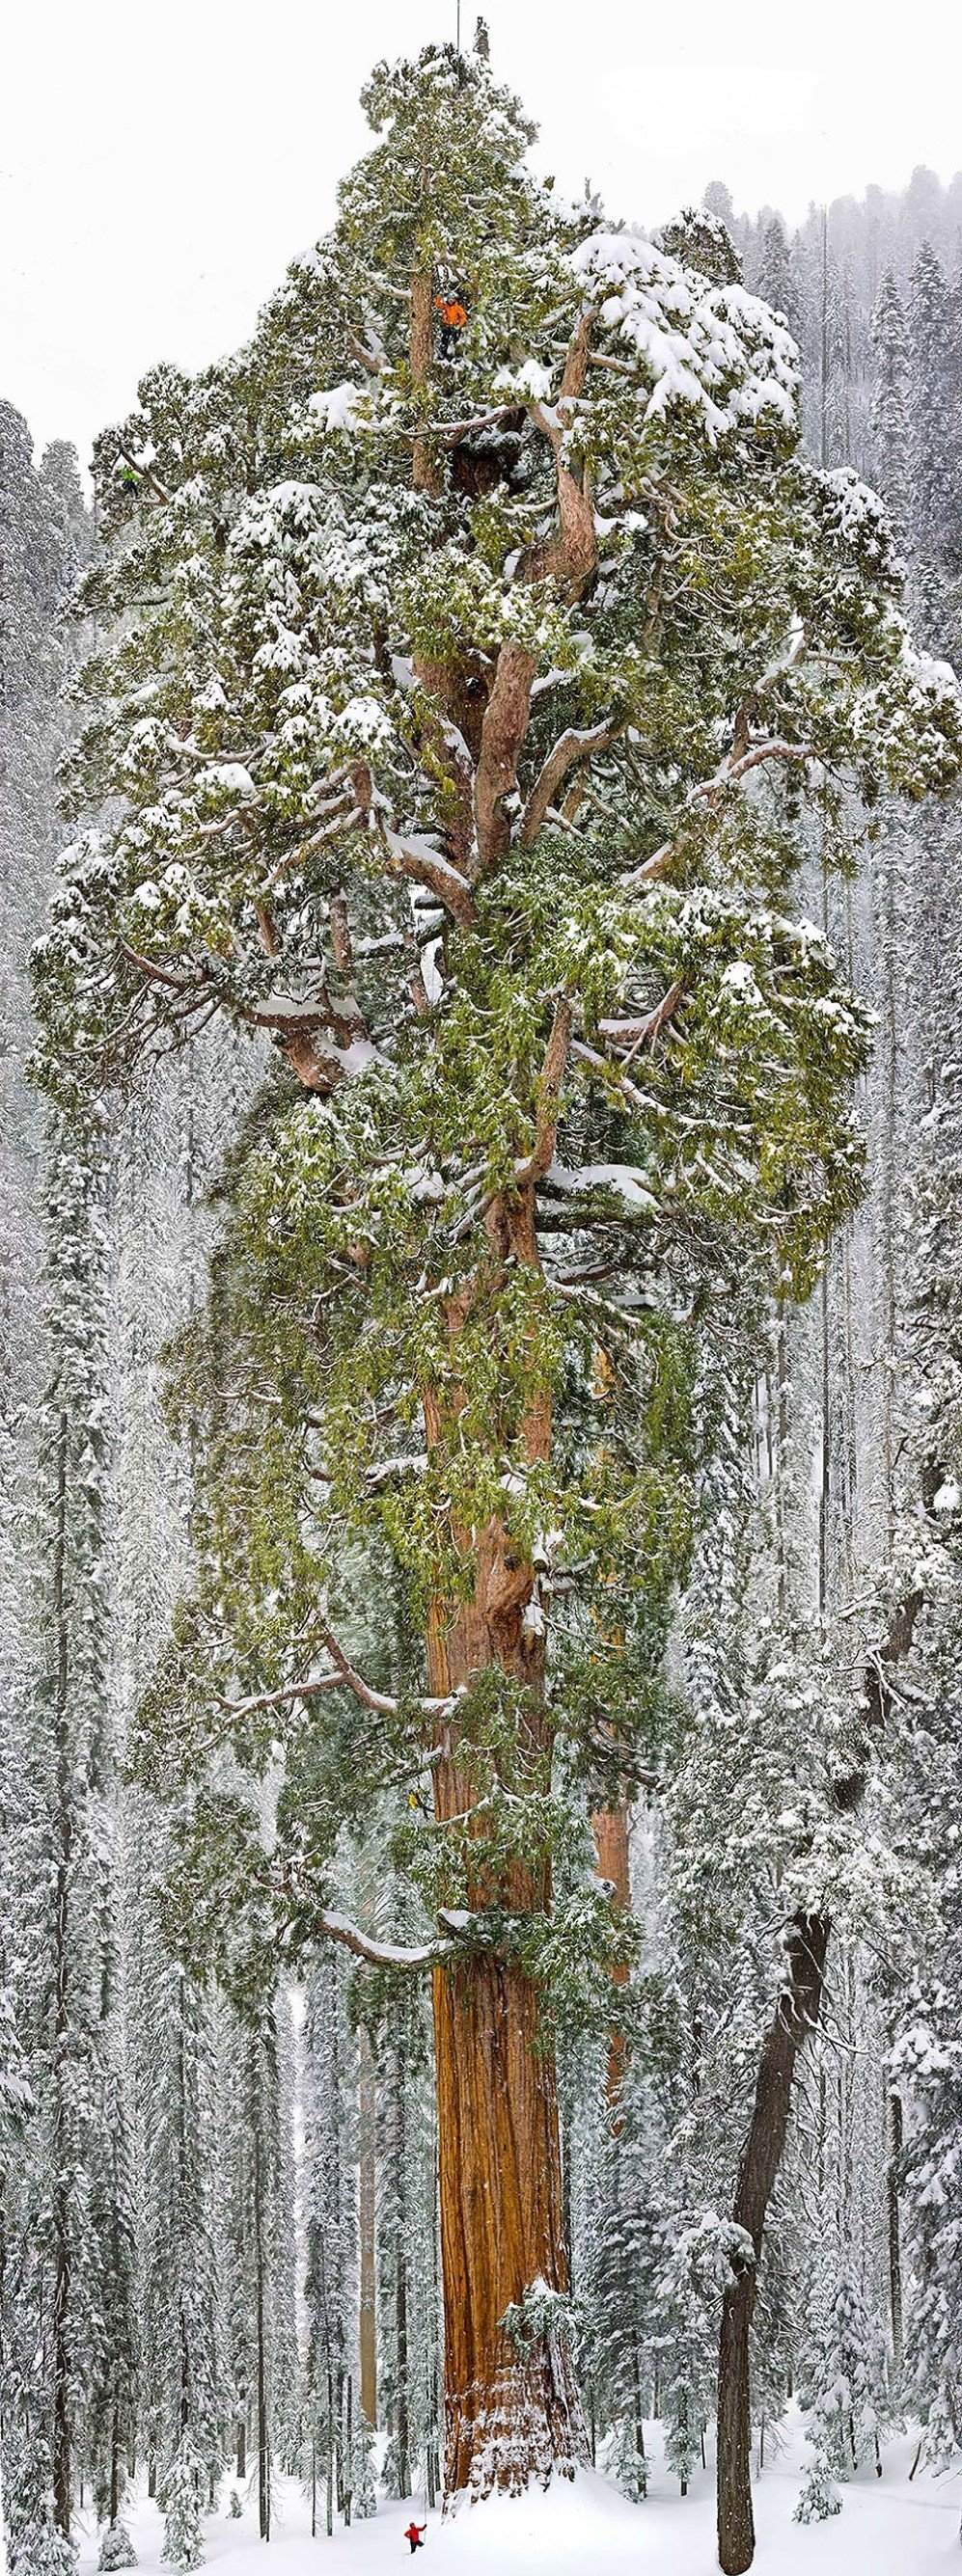 Giant Sequoia Tree California USA